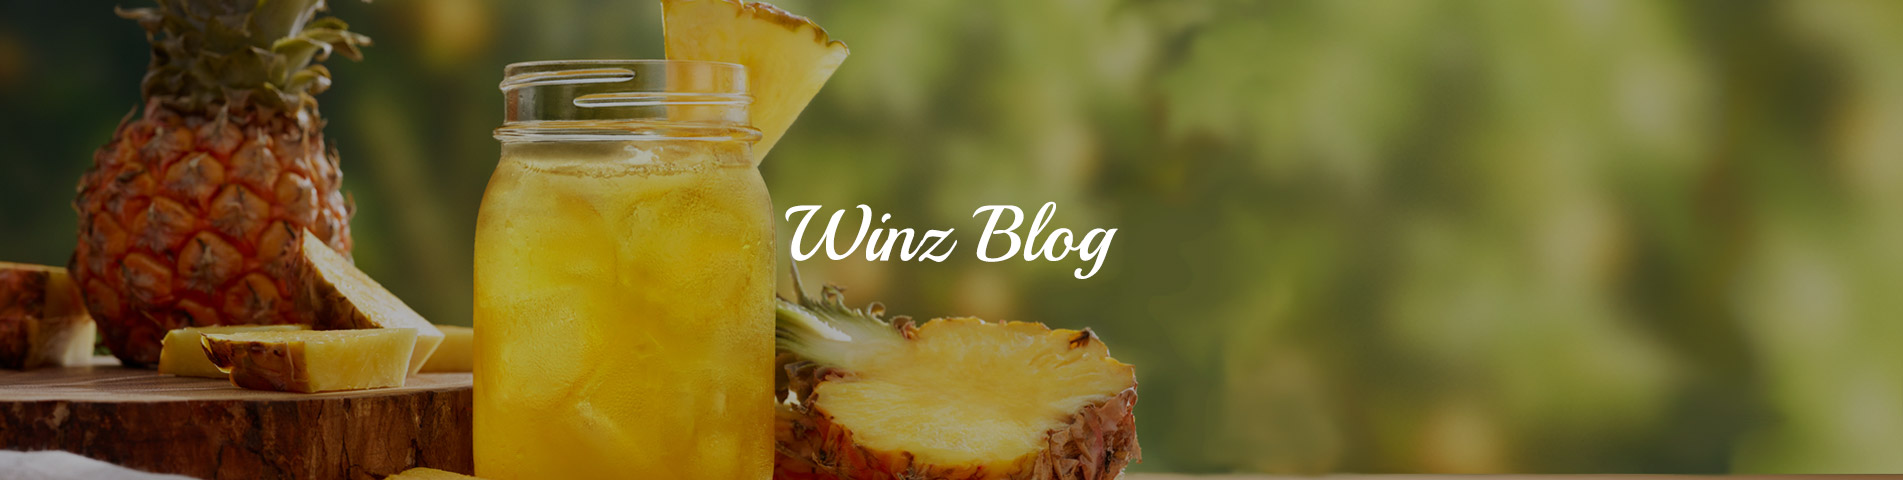 Winz Blog